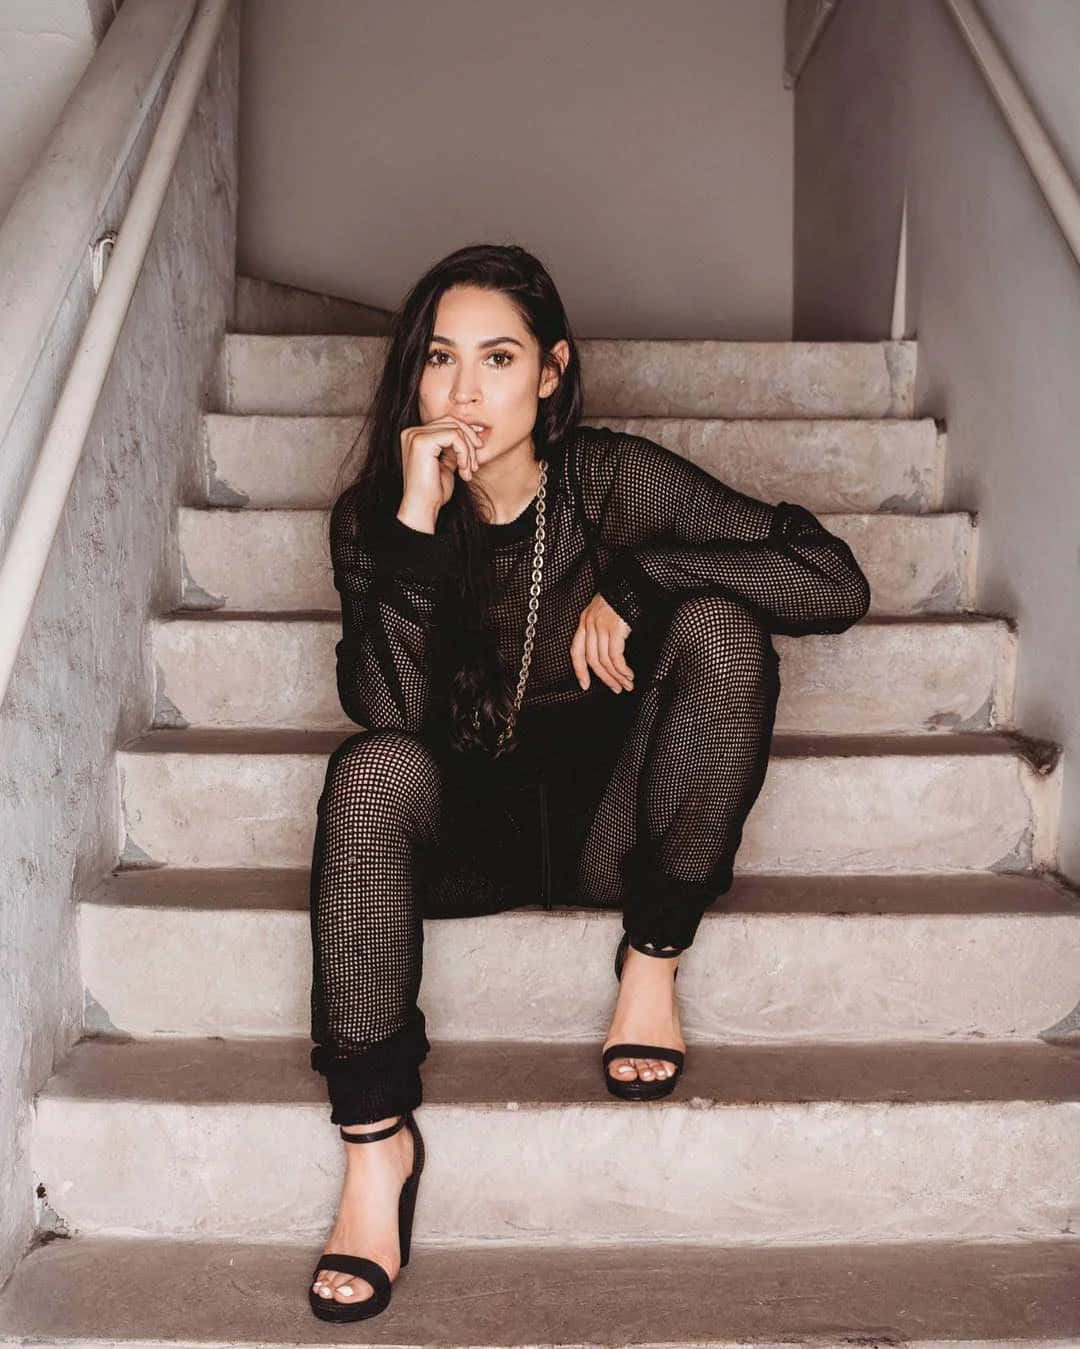 Woman Seatedon Staircasein Black Outfit Wallpaper